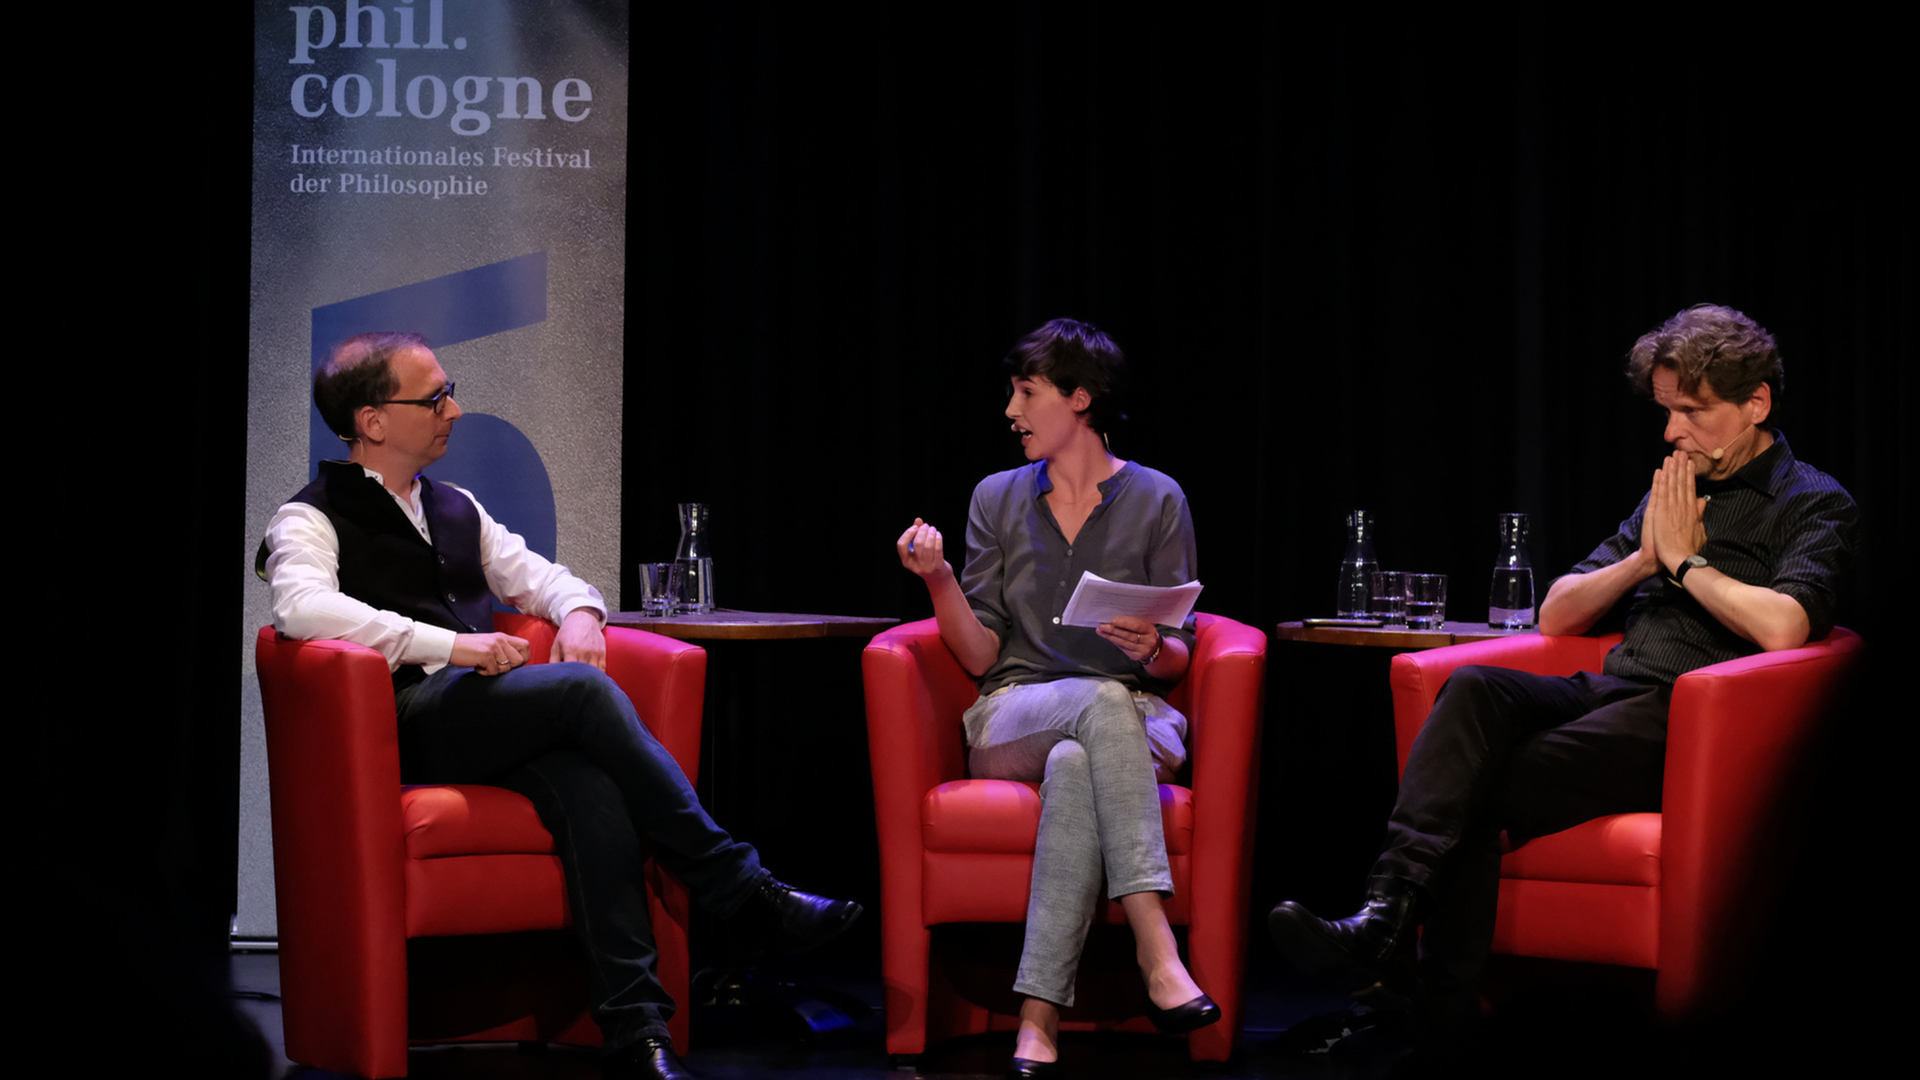 phil.cologne-Diskussion "Wo sitzt die Seele? Über Selbsterkenntnis" - David Lauer, Simone Miller, Michael Pauen (von links nach rechts).